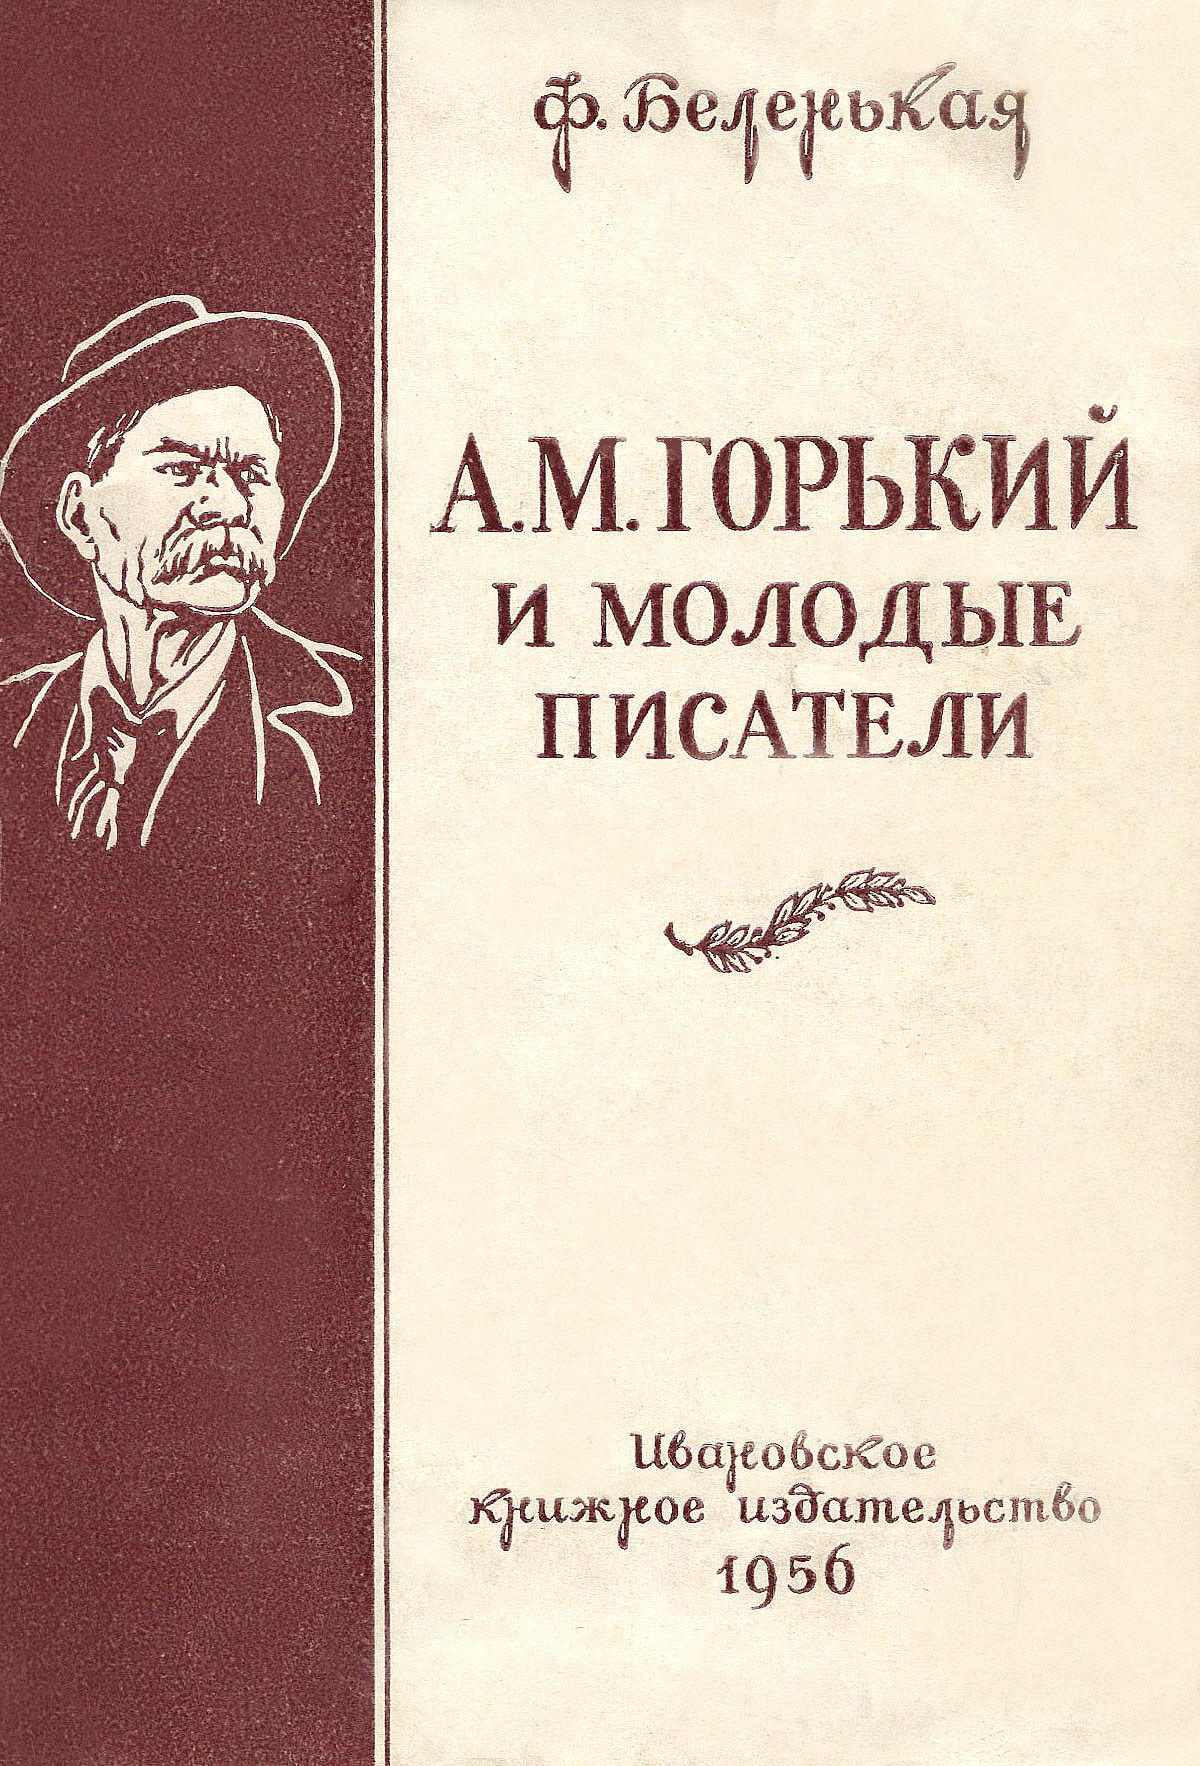 А. М. Горький и молодые писатели